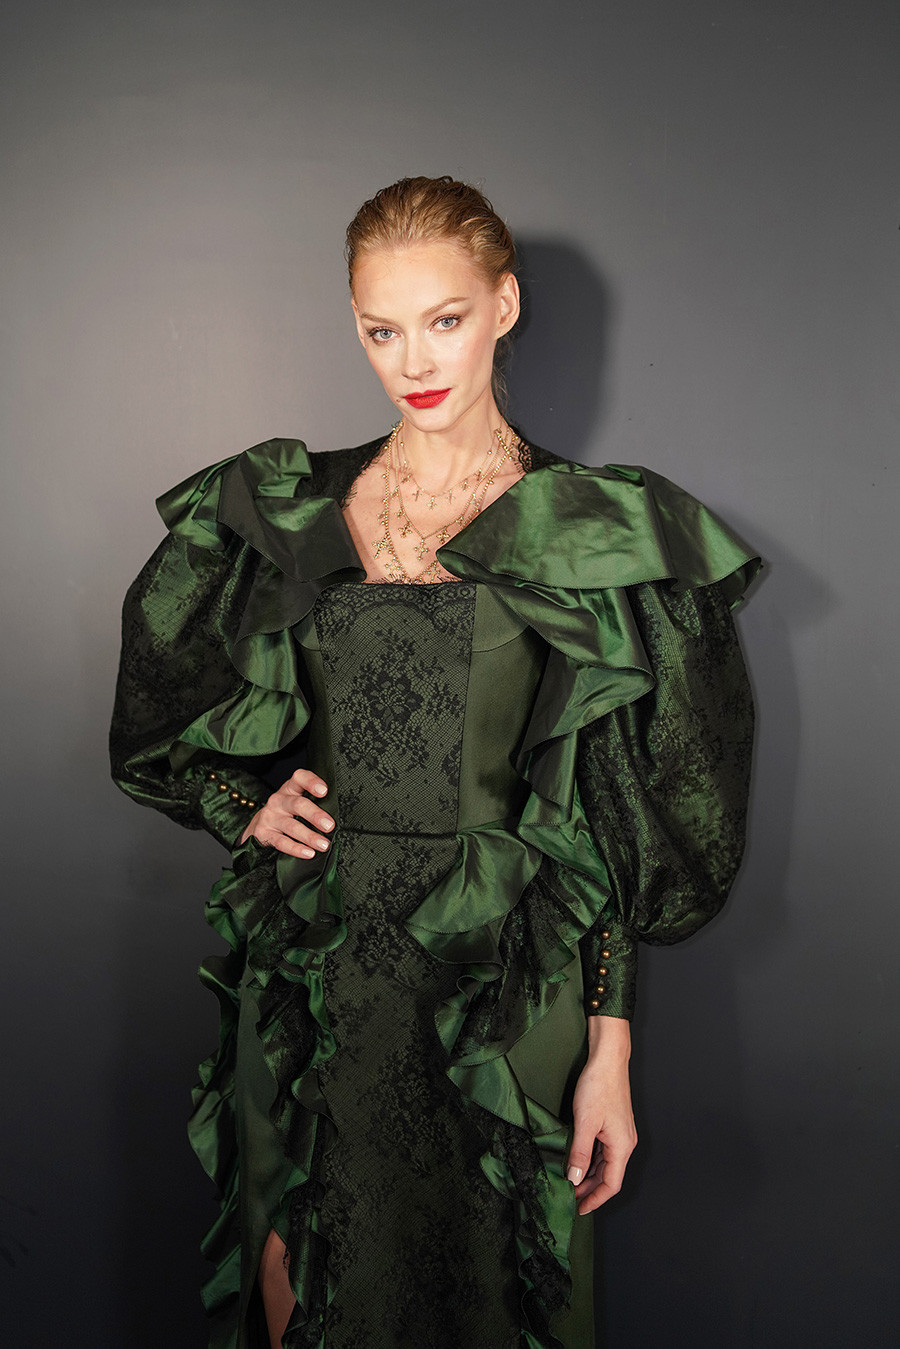 Khodchenkova no desfile de Ulyana Sergeenko Primavera Verão 2019, na Paris Fashion Week, em Paris

